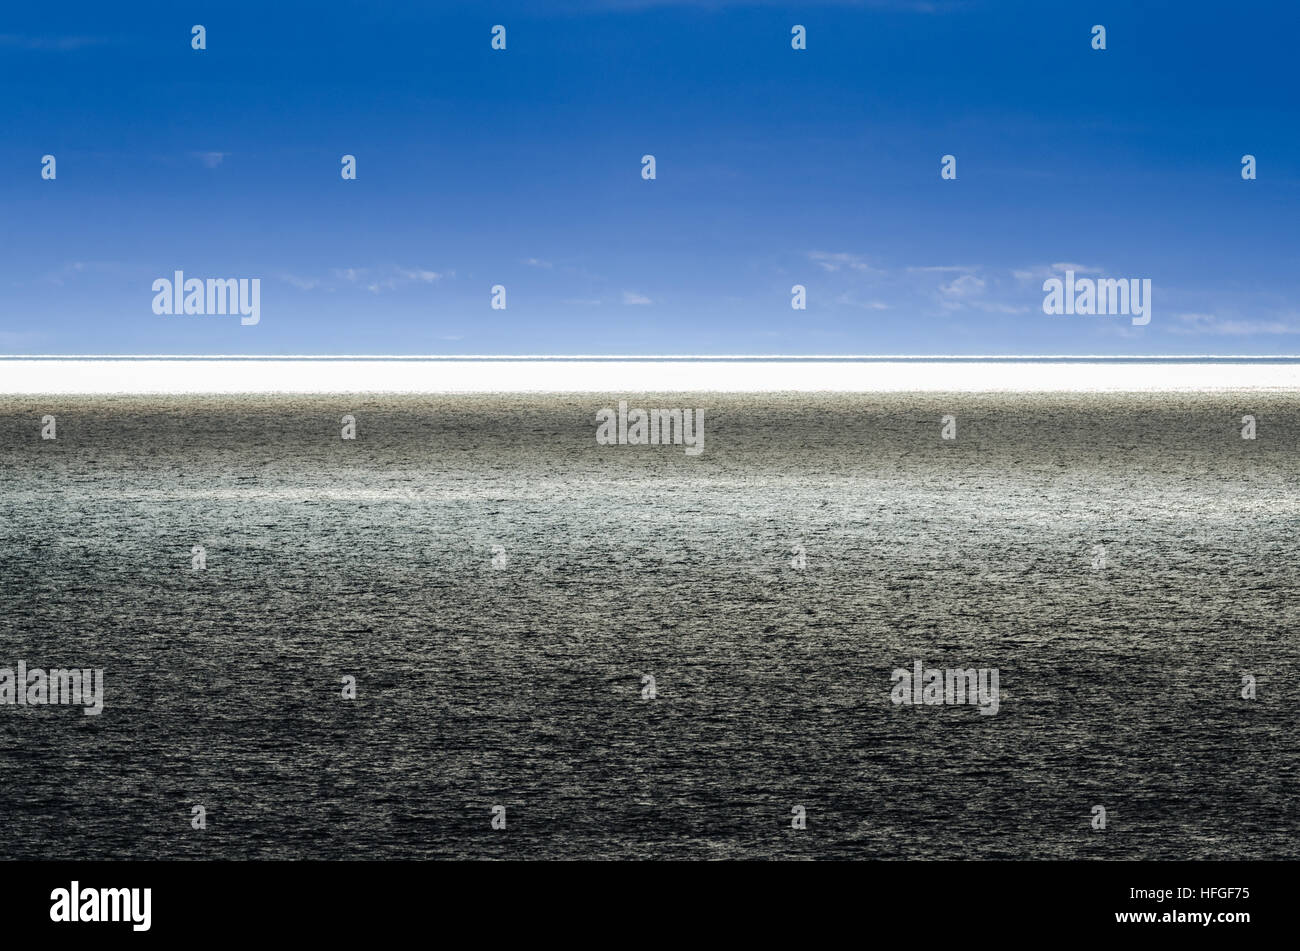 Split, dramatische blauen Horizont auf dem Meer.   Blendende Sonne reflektiert Ozean Horizont - hoher Kontrast von Umgebungen Stockfoto